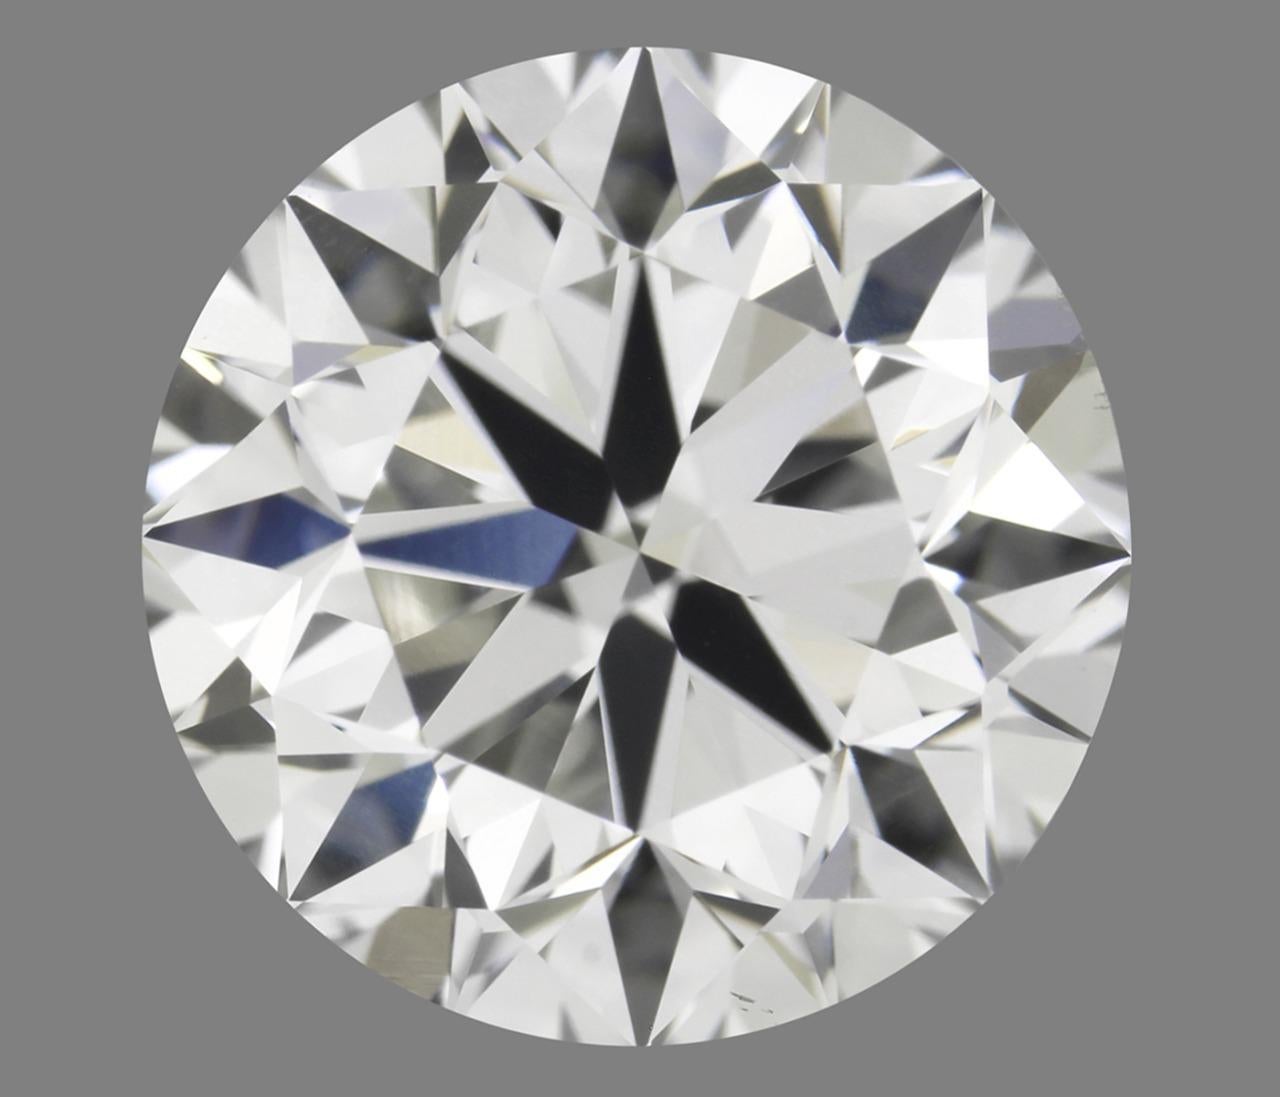 Portefeuille de diamants parfaits.
40 excellents diamants naturels avec certificat GIA

0,50ct-1,02ct., G-D/VVS2-FL.
27x 0,50-0,55ct.
13x 1.00-1.02ct.
 
Info :
A.C.C. :
Certificat : GIA
Carat : 0.50ct-1.02ct
Couleur : D.G.
Clarté : VVS2-FL (sans